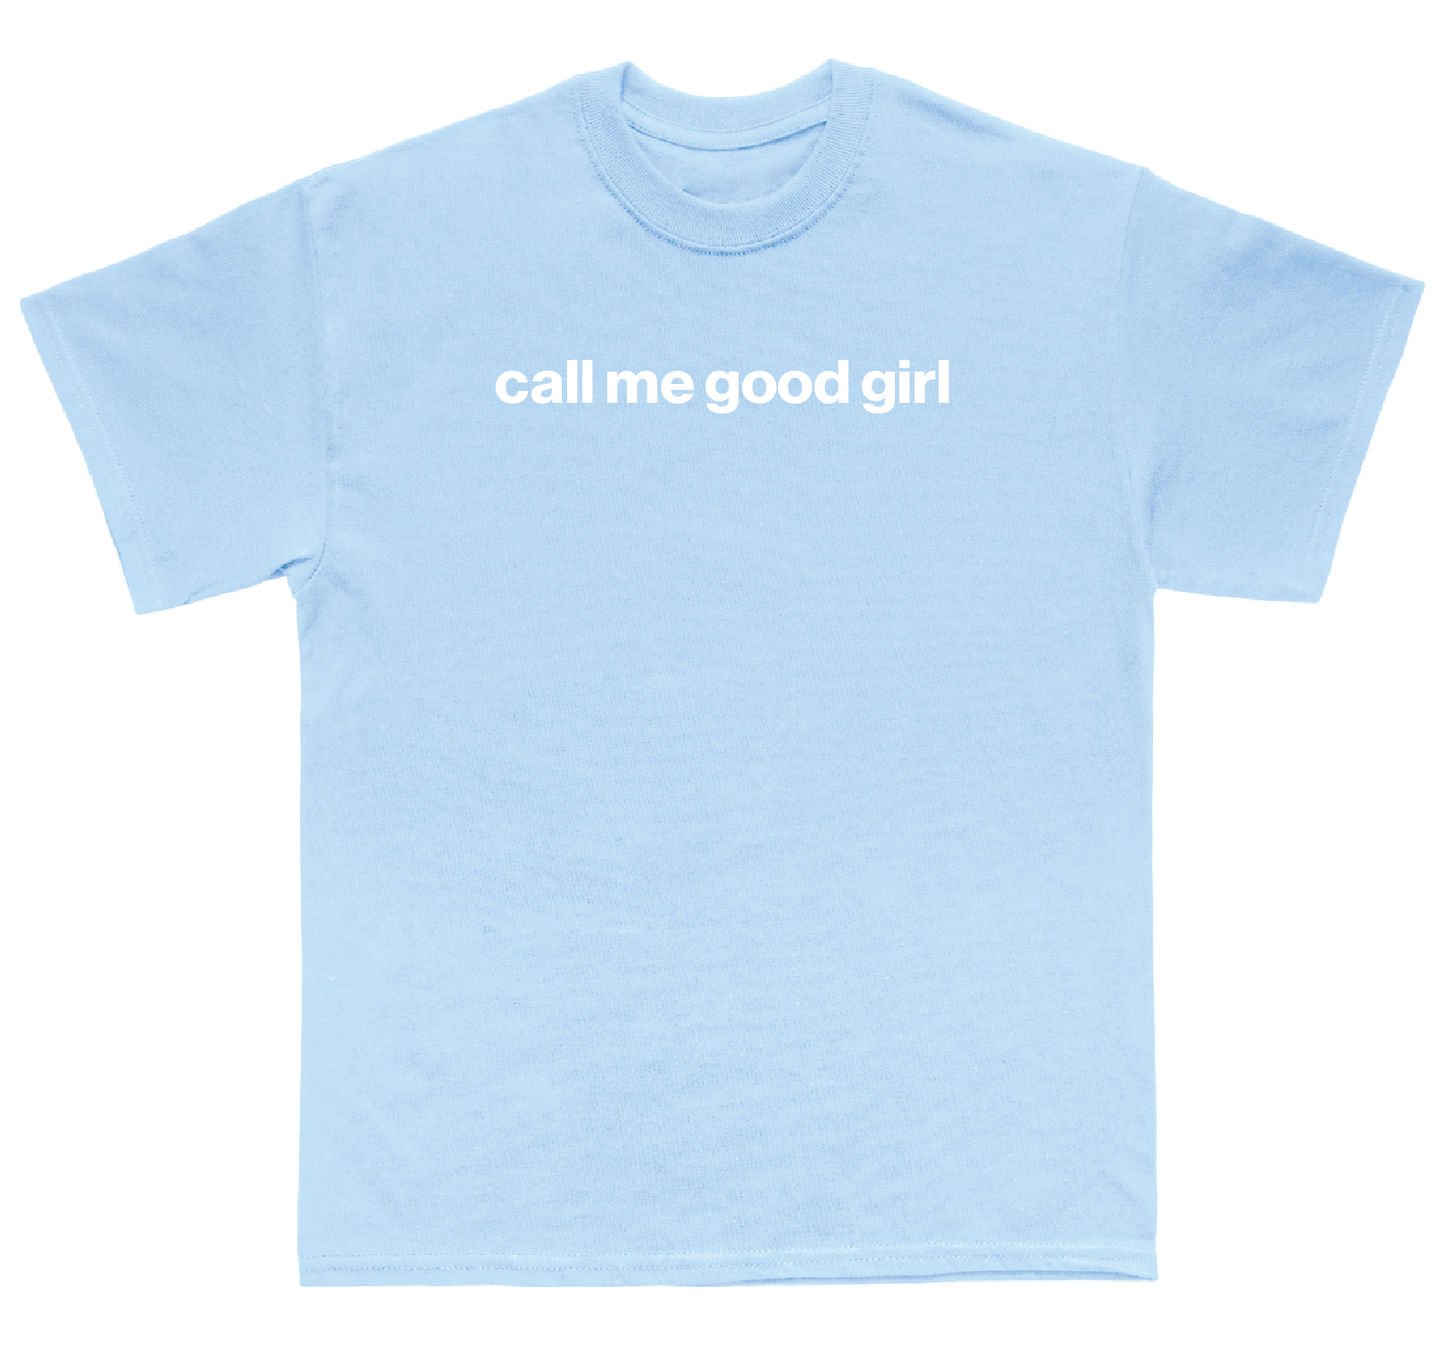 call me good girl shirt